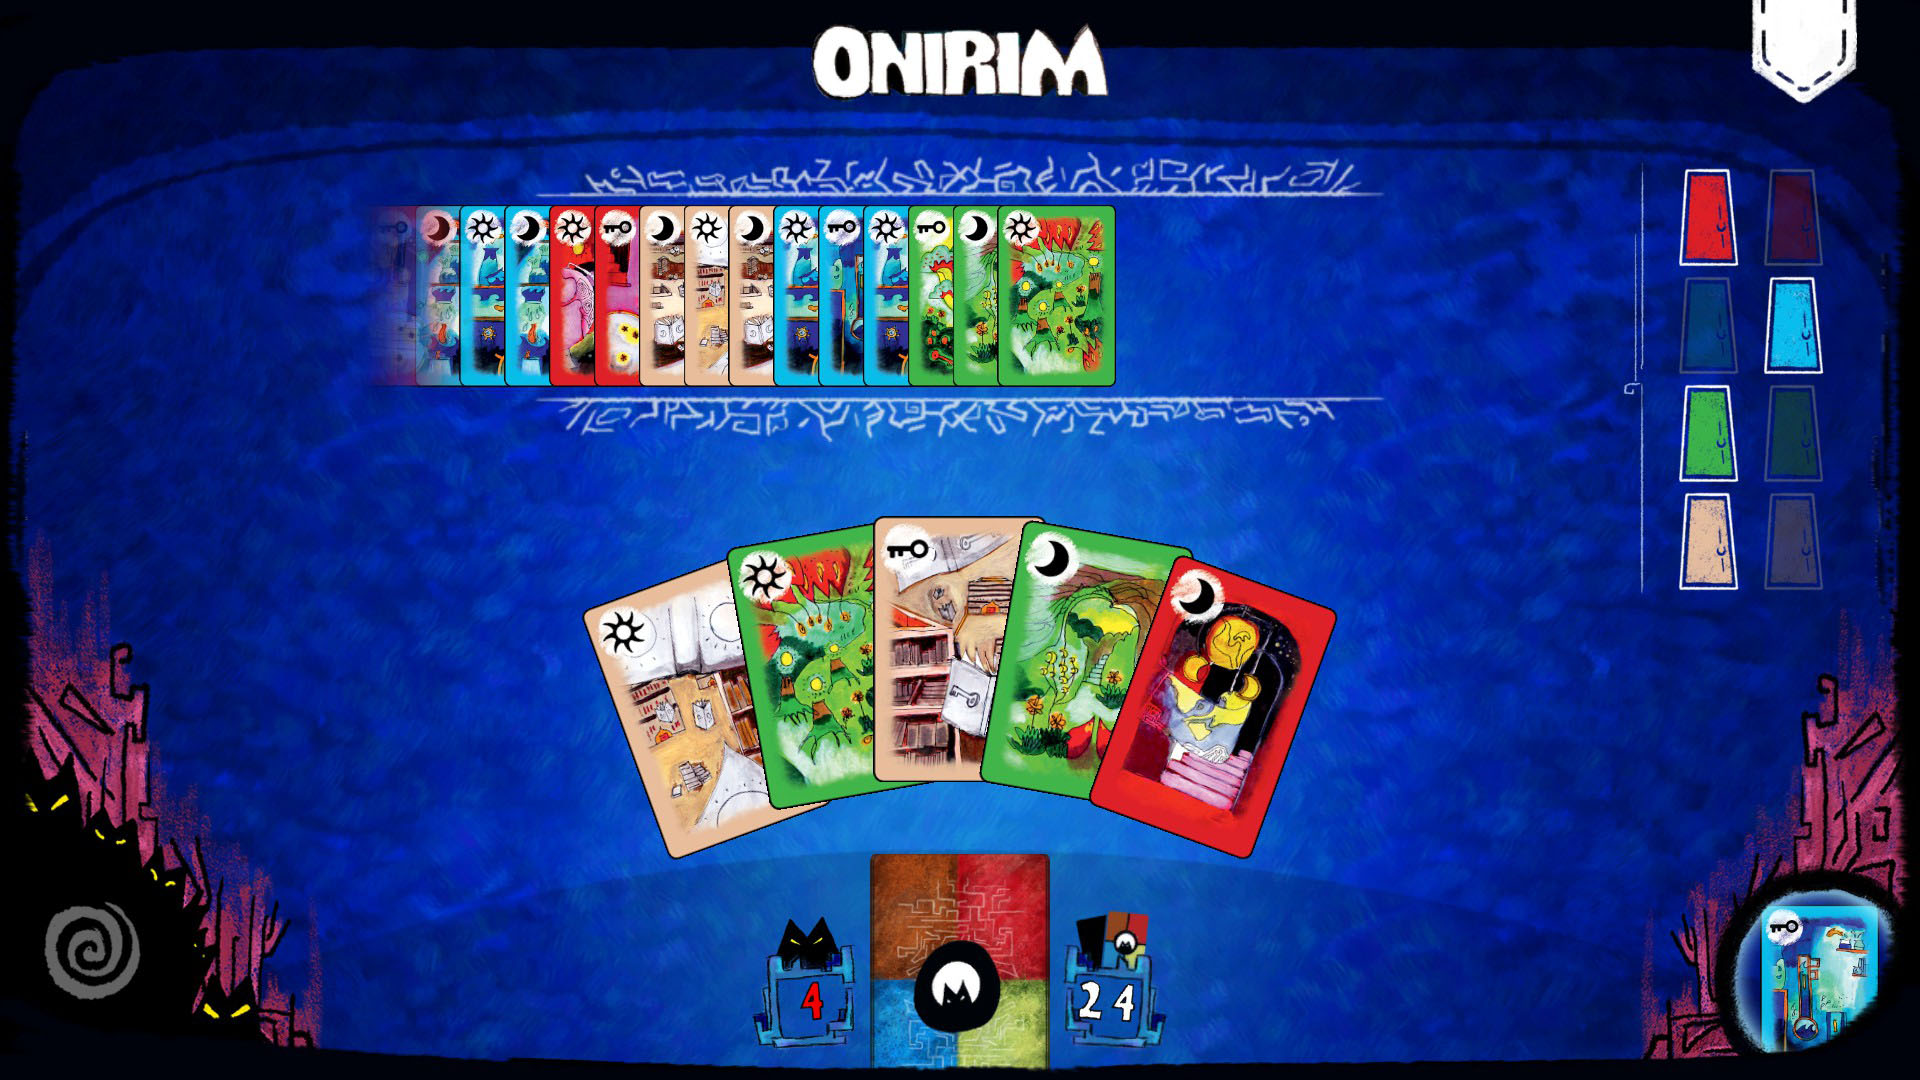 بازی رومیزی Onirim 20 تا از بهترین بازی های رومیزی اندروید ایتی مایتی